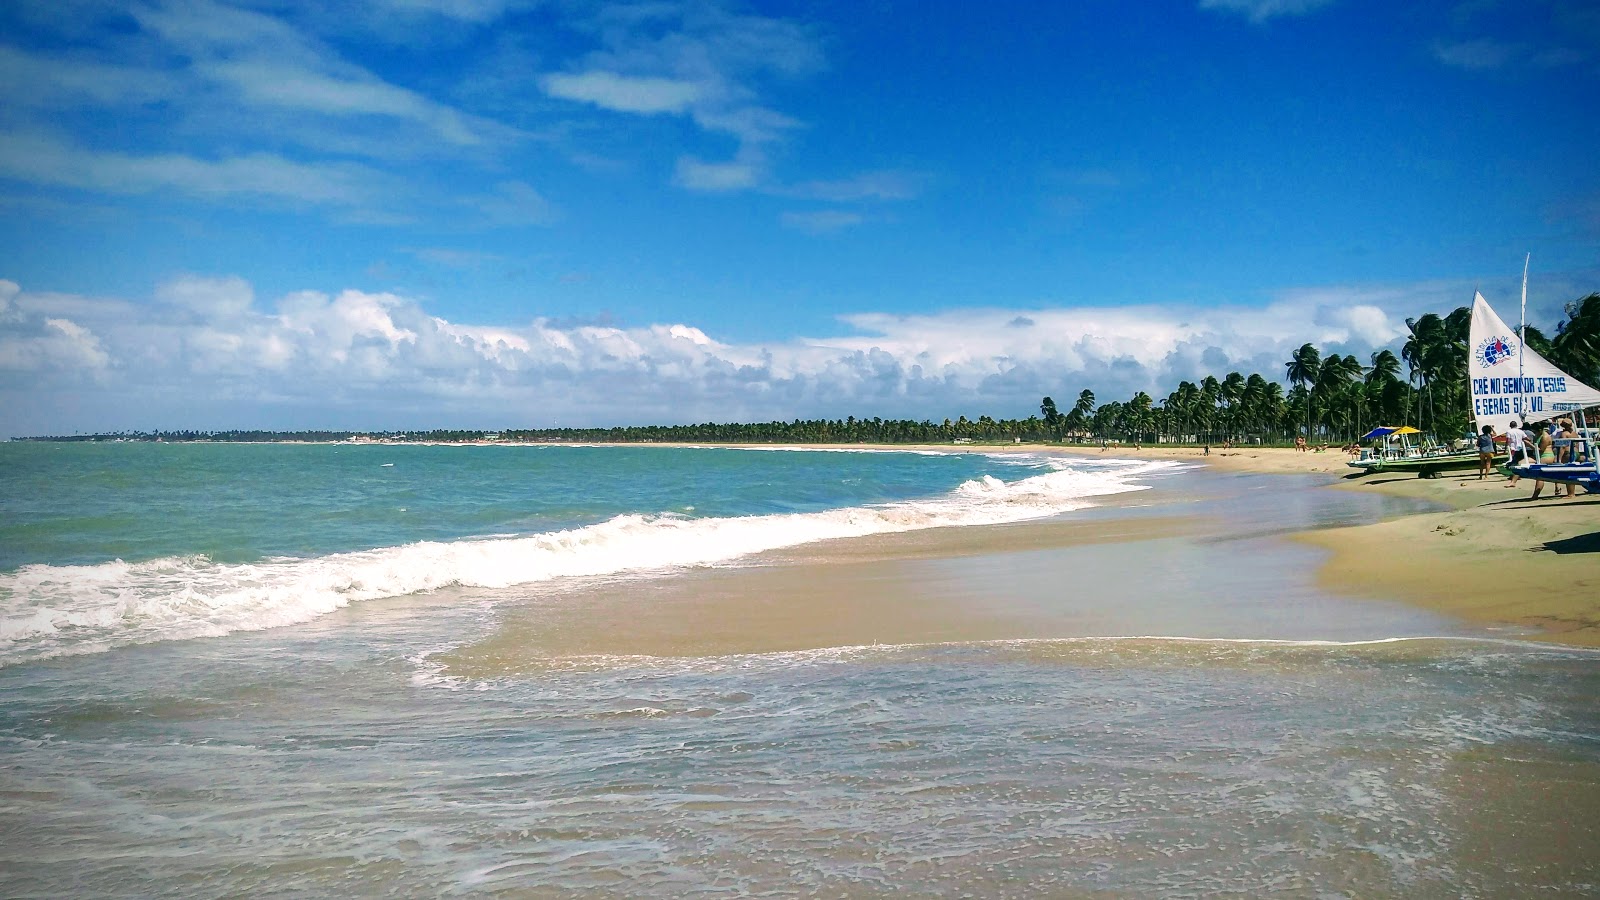 Praia de Maracaipe的照片 带有碧绿色纯水表面